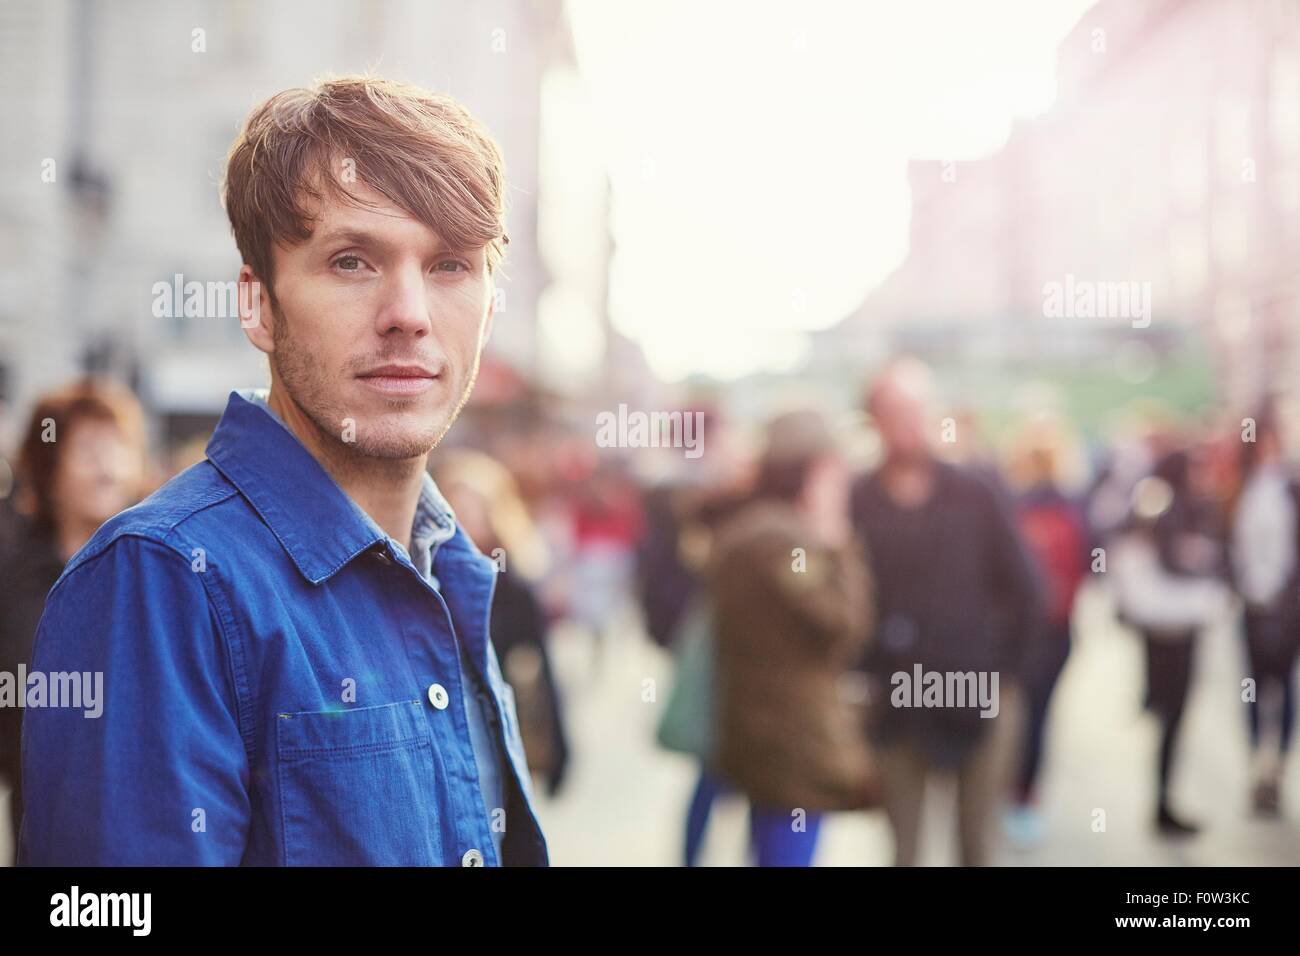 Porträt von Mitte erwachsenen Mannes auf belebten Straße, London, UK Stockfoto